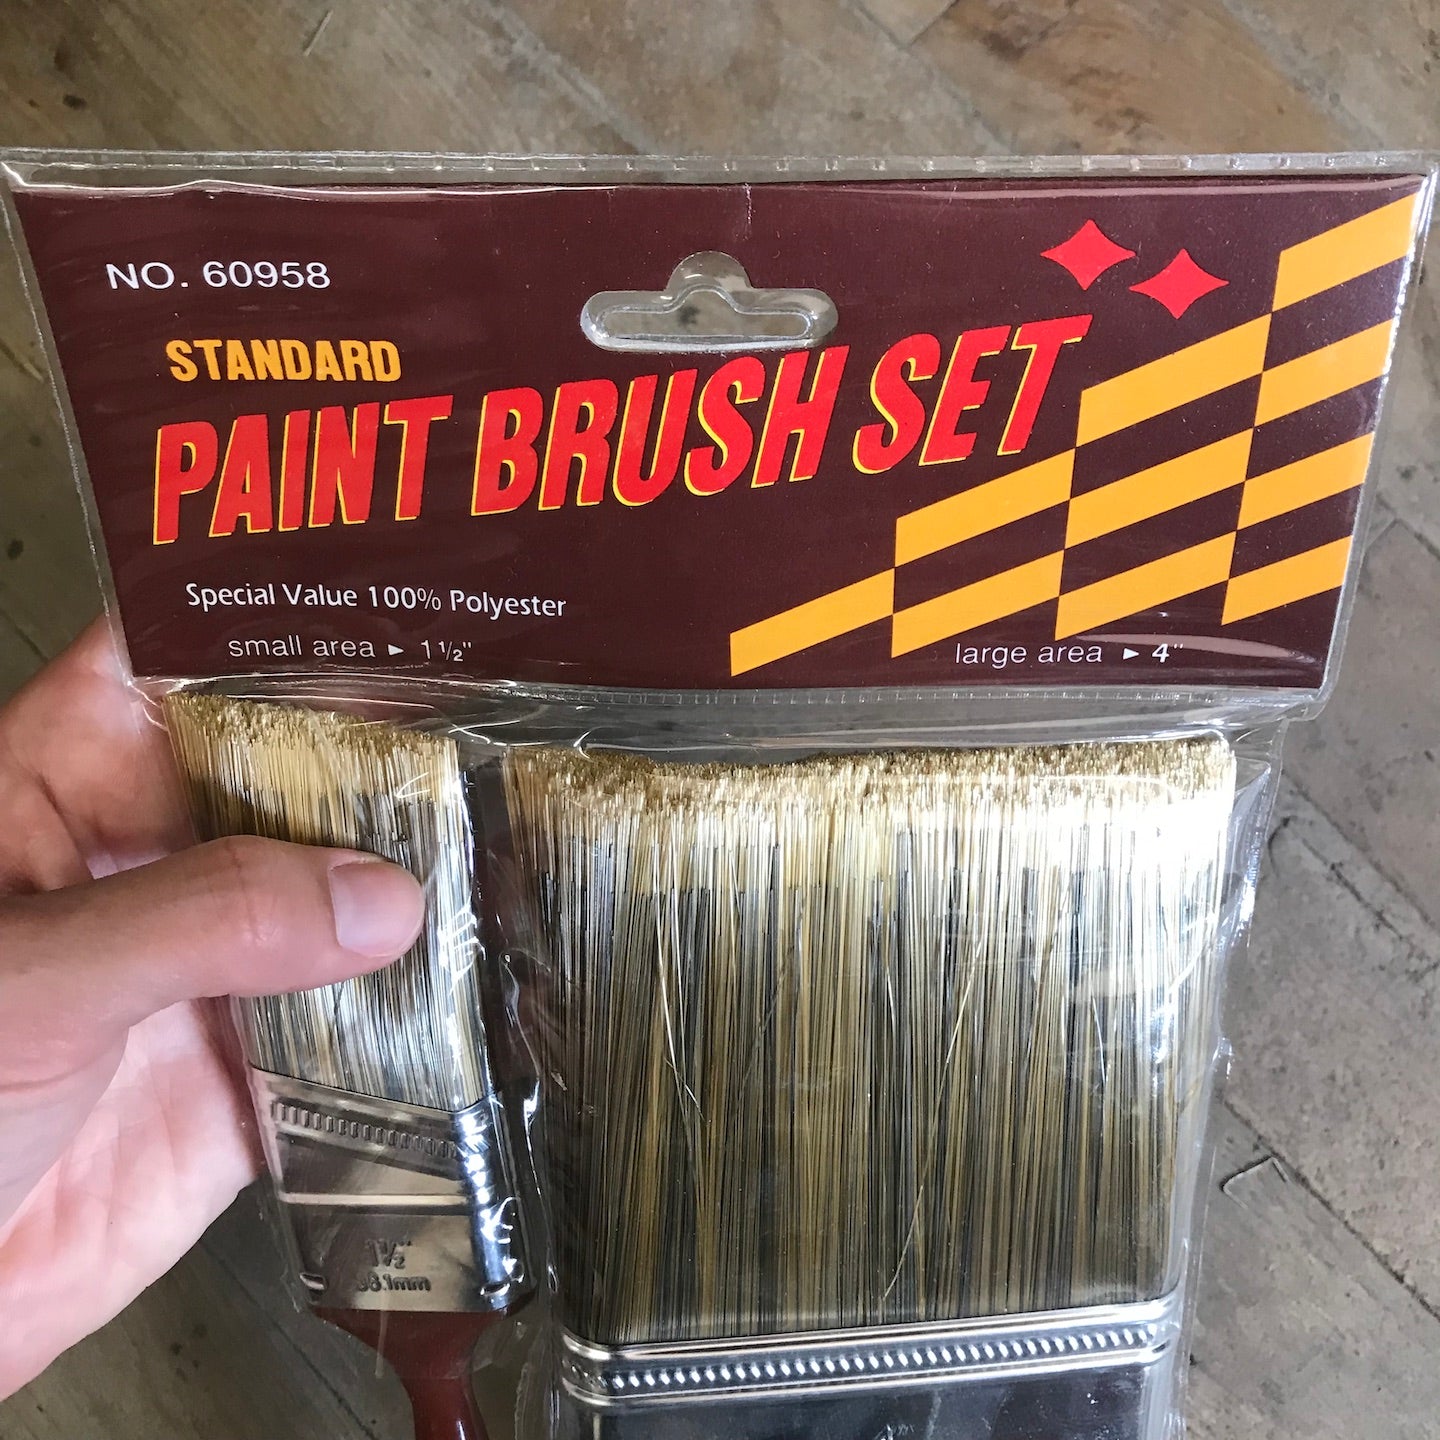 Standard Paint Brush Set 1 1/2" Brush and 4" Brush (60958)